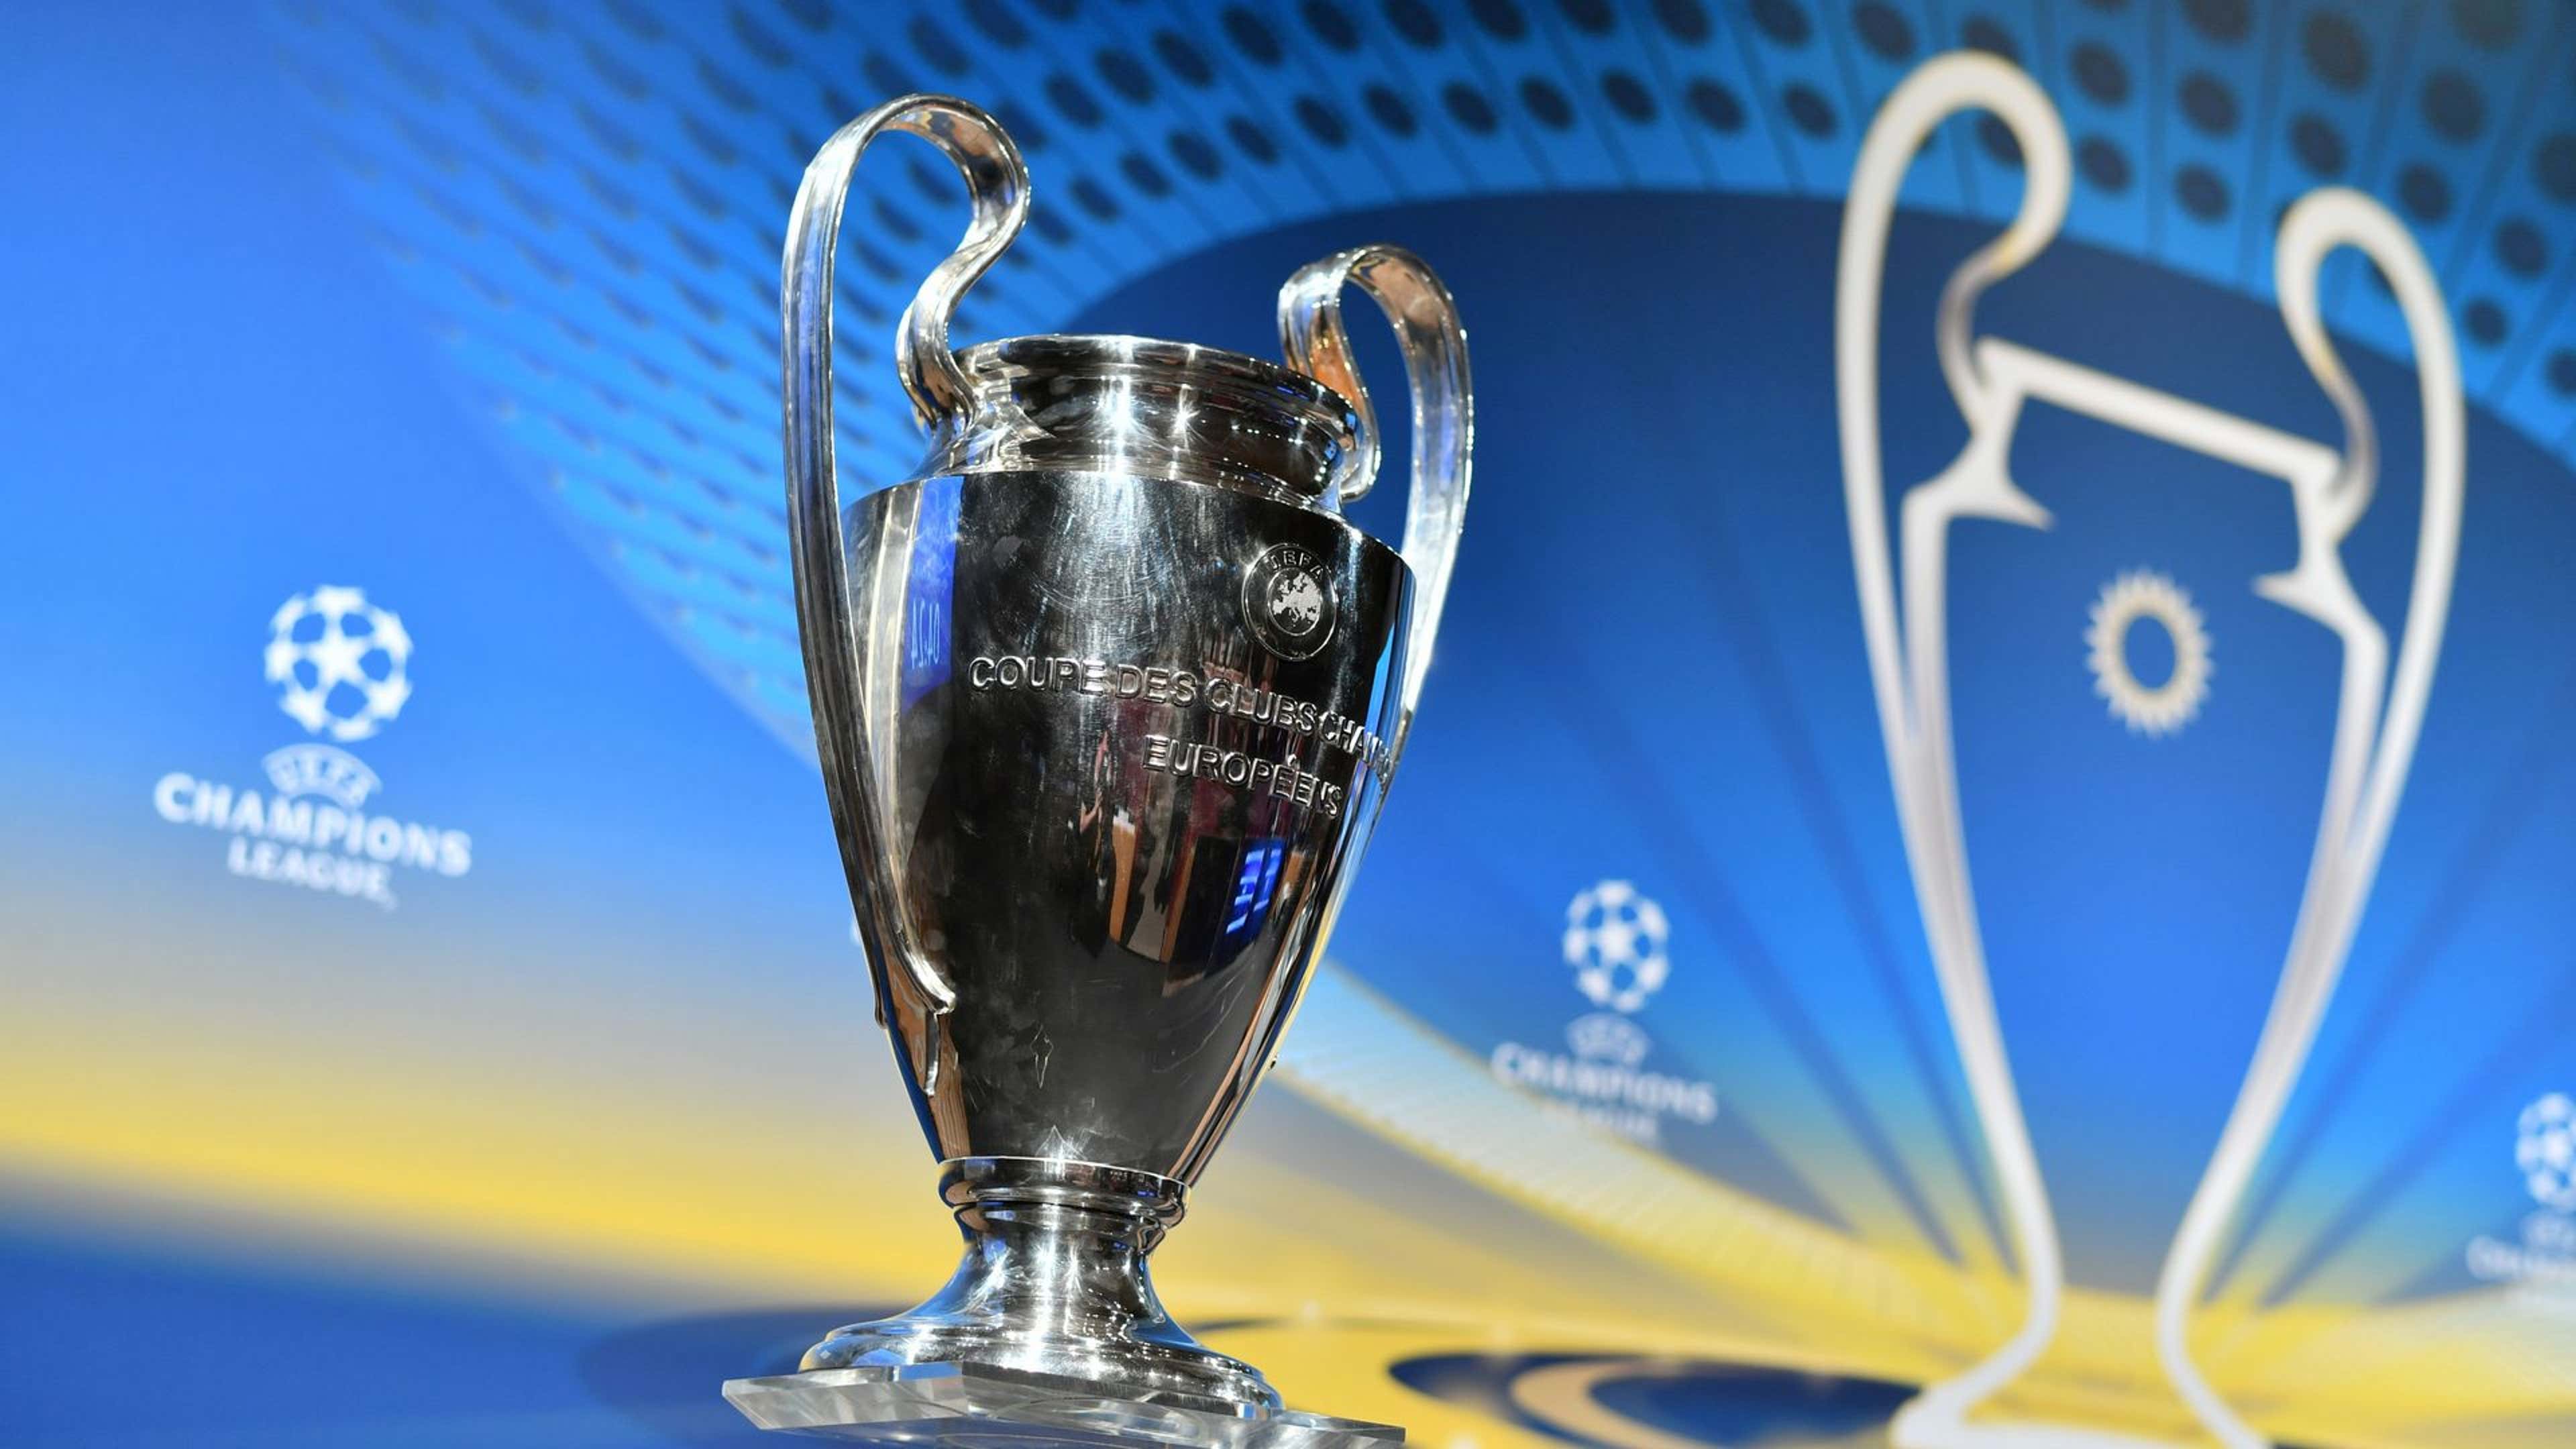 Mundial de Clubes: Chelsea é o oitavo campeão da Europa a vencer, UEFA  Champions League